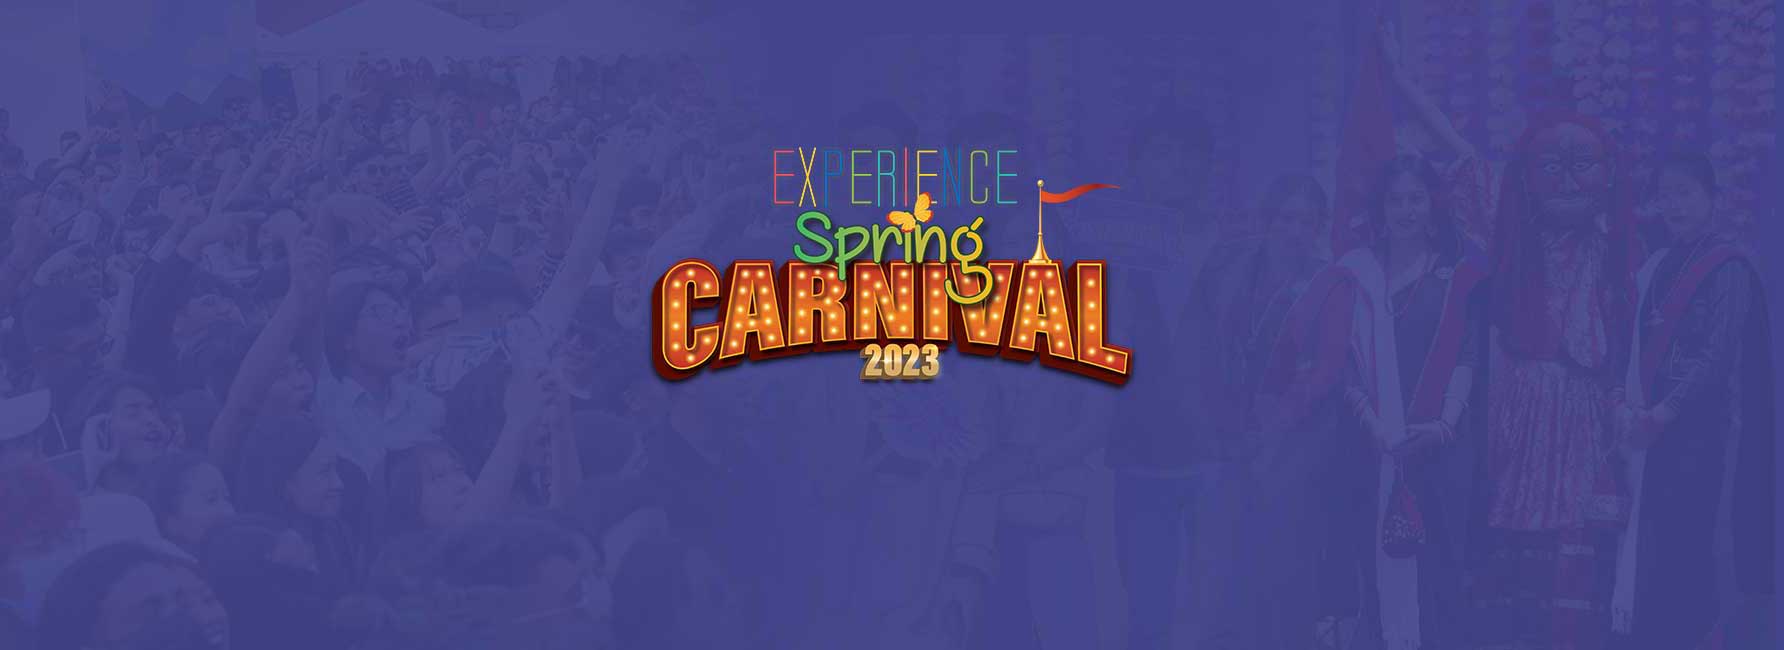 Islington Spring Carnival 2023